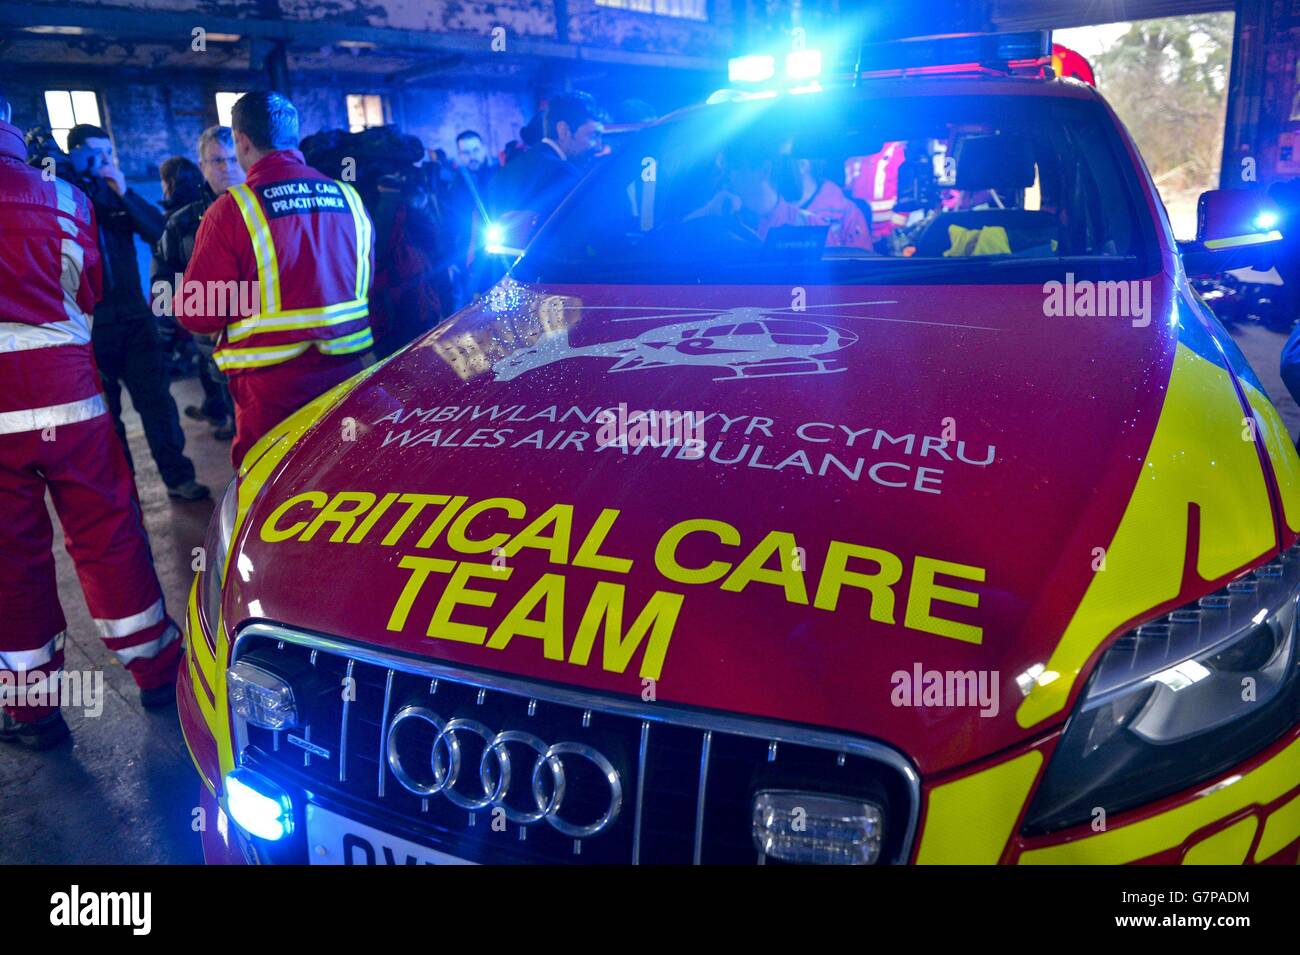 Ein hochmodernes, von der walisischen Regierung finanziertes Audi Q7 4x4 Critical Care Team Fahrzeug während eines Live-Trainings mit mehreren Agenturen in der Nähe von Newport in Wales. Stockfoto